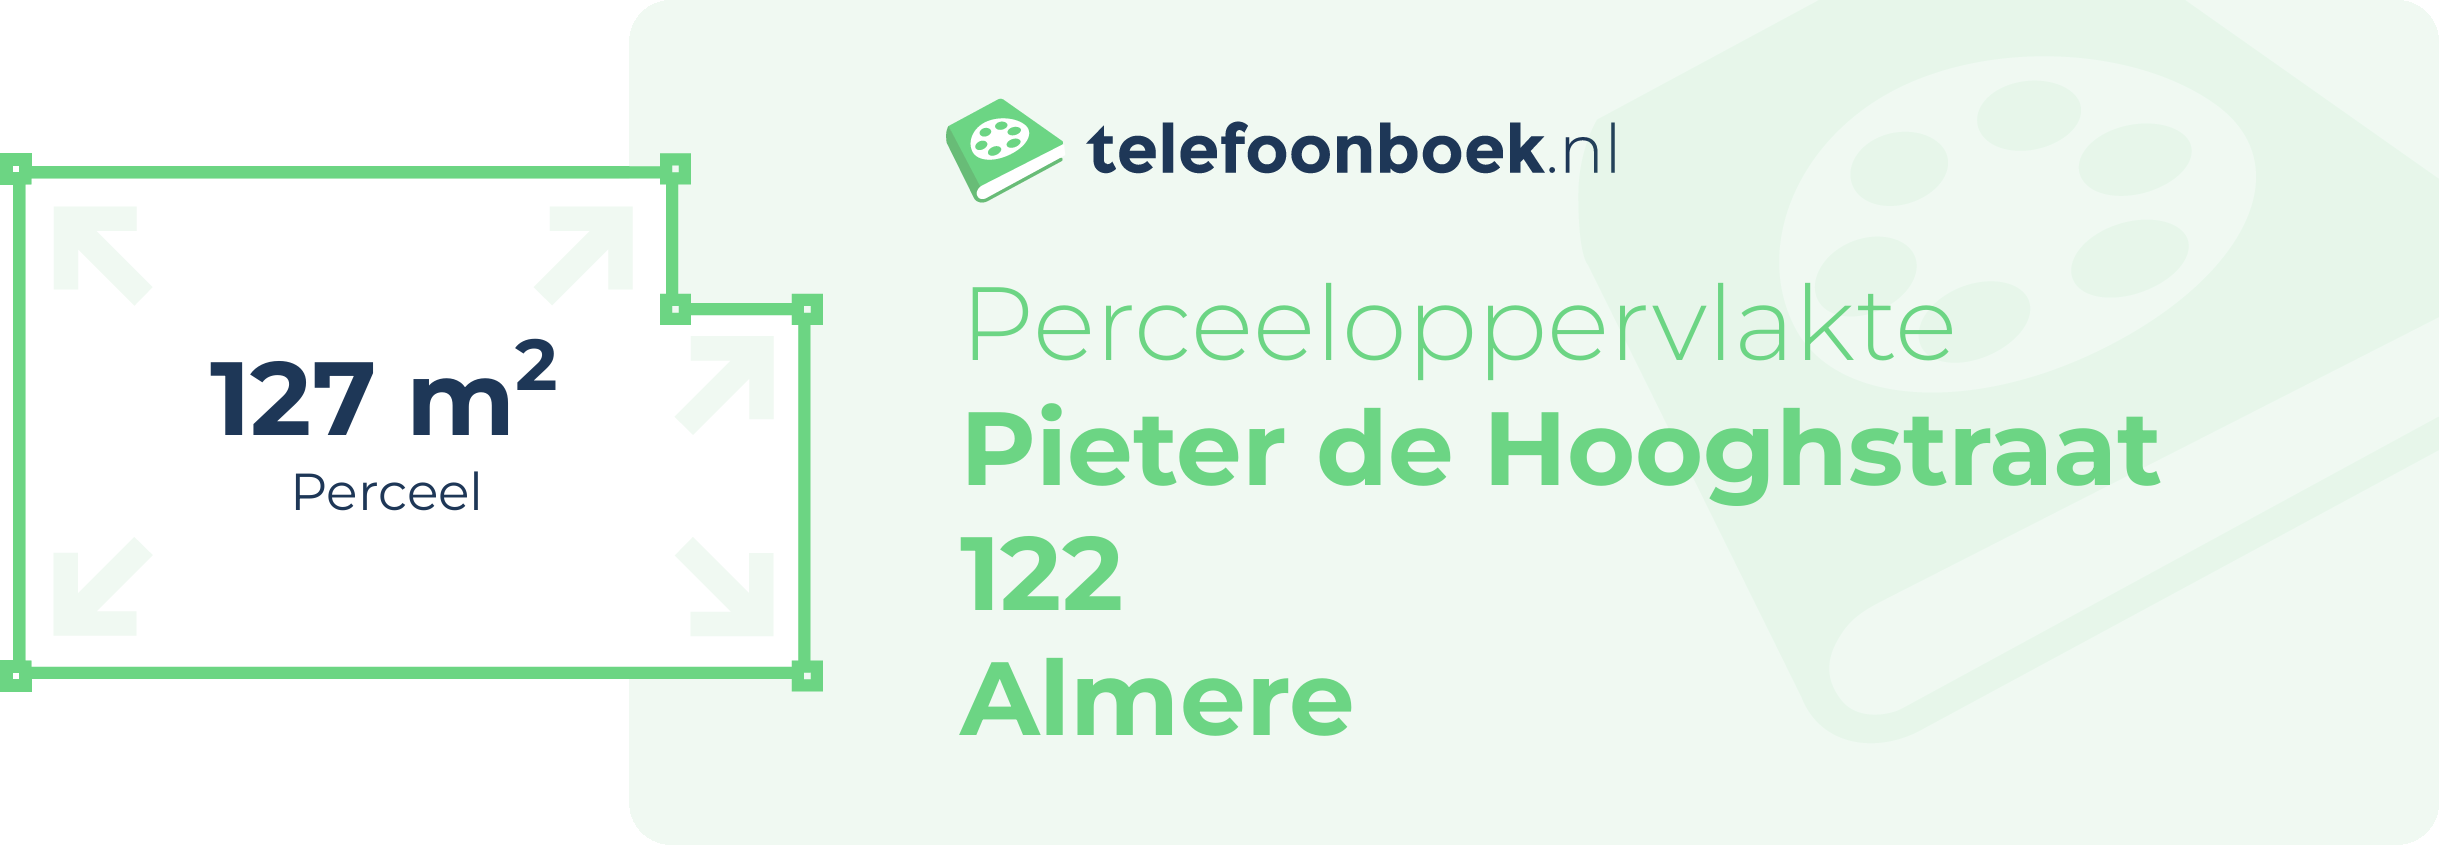 Perceeloppervlakte Pieter De Hooghstraat 122 Almere